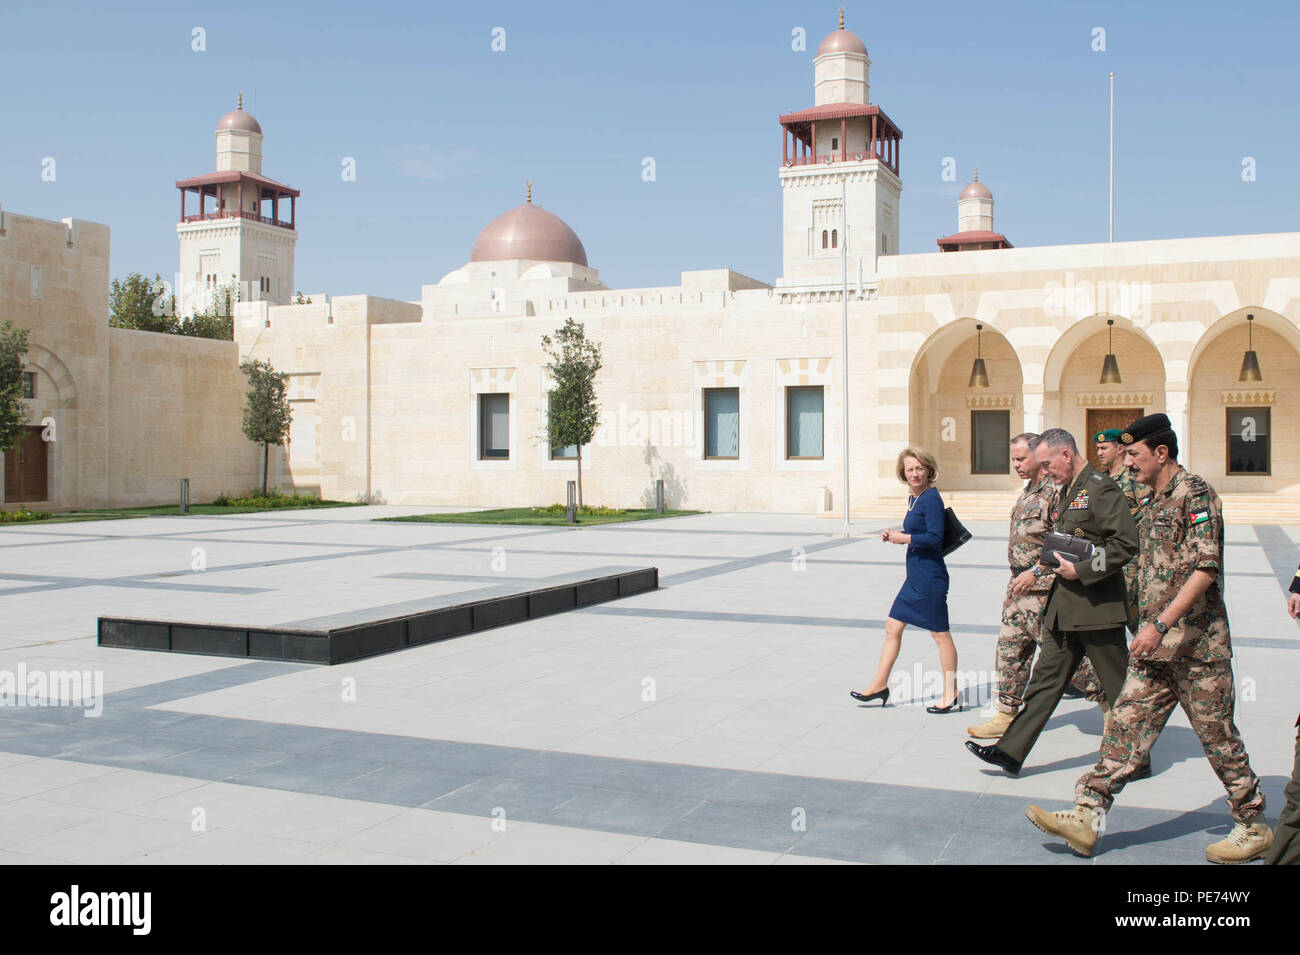 de-izquierda-a-derecha-el-embajador-de-estados-unidos-en-jordania-alice-g-wells-principe-jordano-faisal-el-general-de-los-marines-de-estados-unidos-joseph-f-dunford-jr-jefe-del-estado-mayor-de-la-defensa-y-jordana-gen-meshal-al-zaben-caminar-a-reunirse-con-el-rey-de-jordania-en-la-husseiniya-palace-en-amman-jordania-19-de-octubre-de-2015-dod-foto-por-d-myles-cullen-liberado-pe74wy.jpg